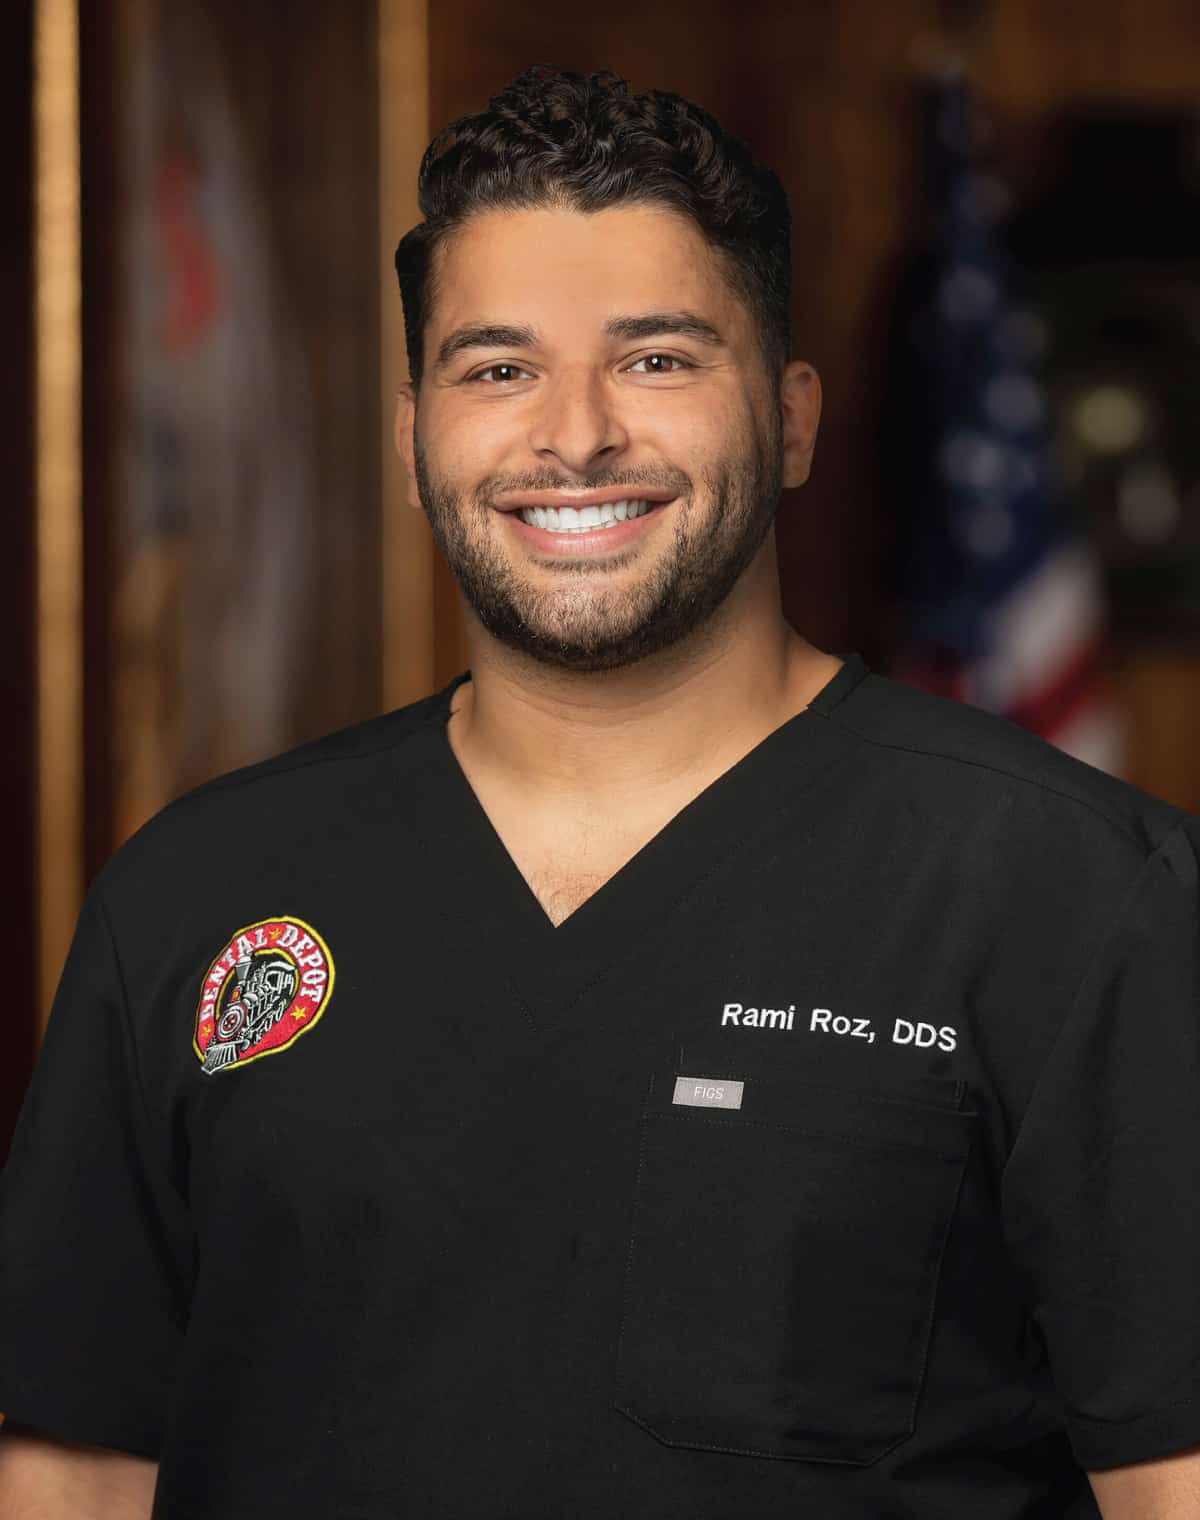 Dr. Rami Roz of Dental Depot south OKC